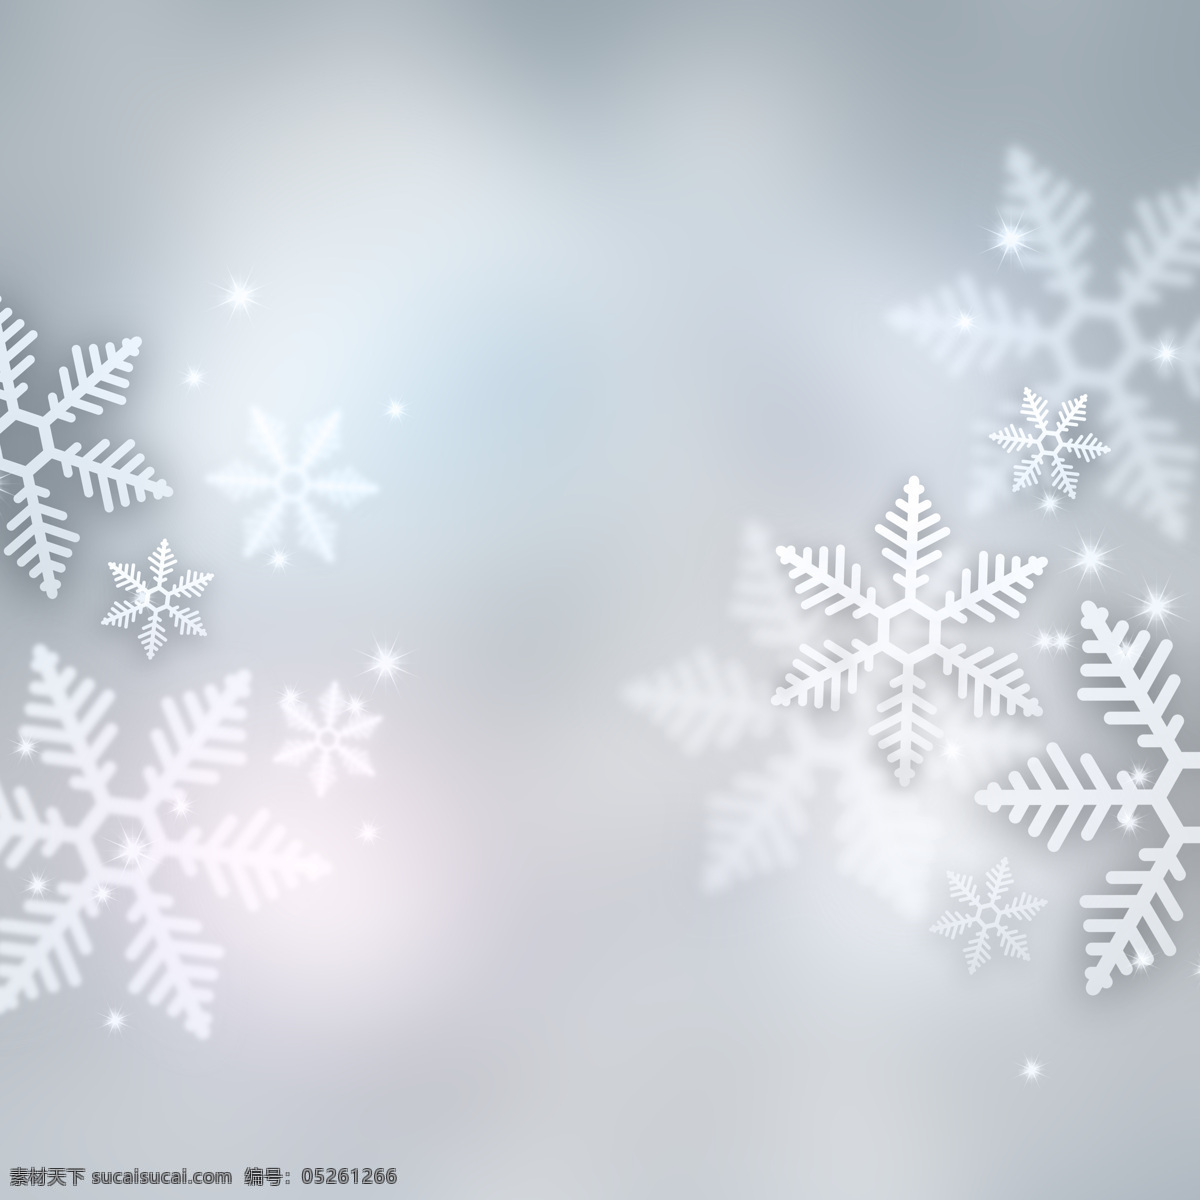 白色雪花 圣诞 可爱白色雪花 可爱白色 晶莹雪花 下雪天 背景 背景底纹 底纹边框